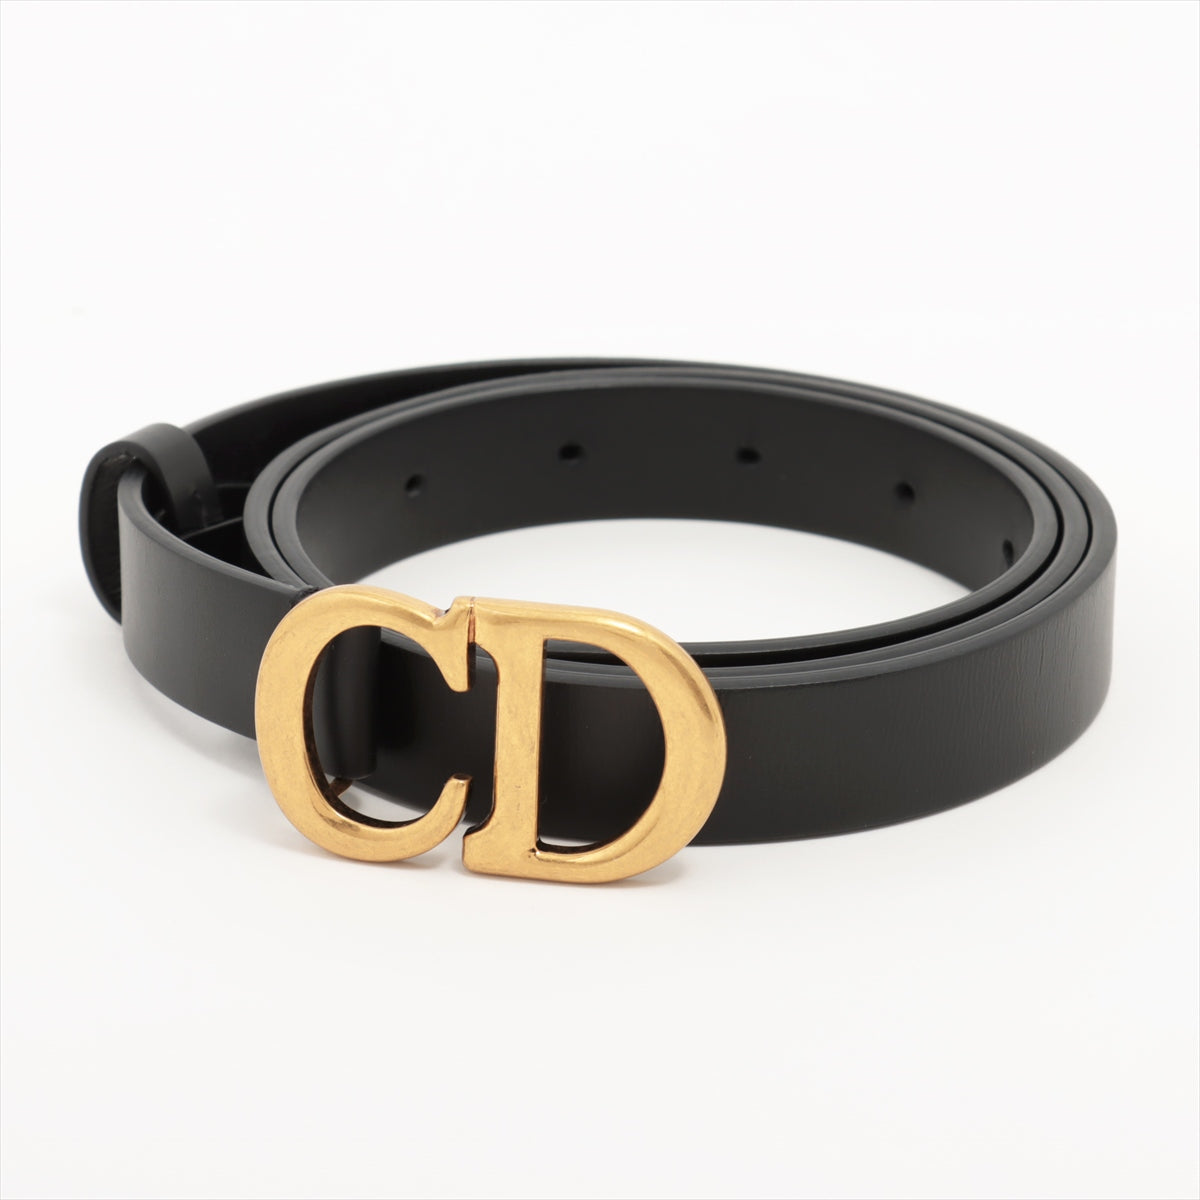 Dior CD logo Belt 85 GP & Leather Black×Gold